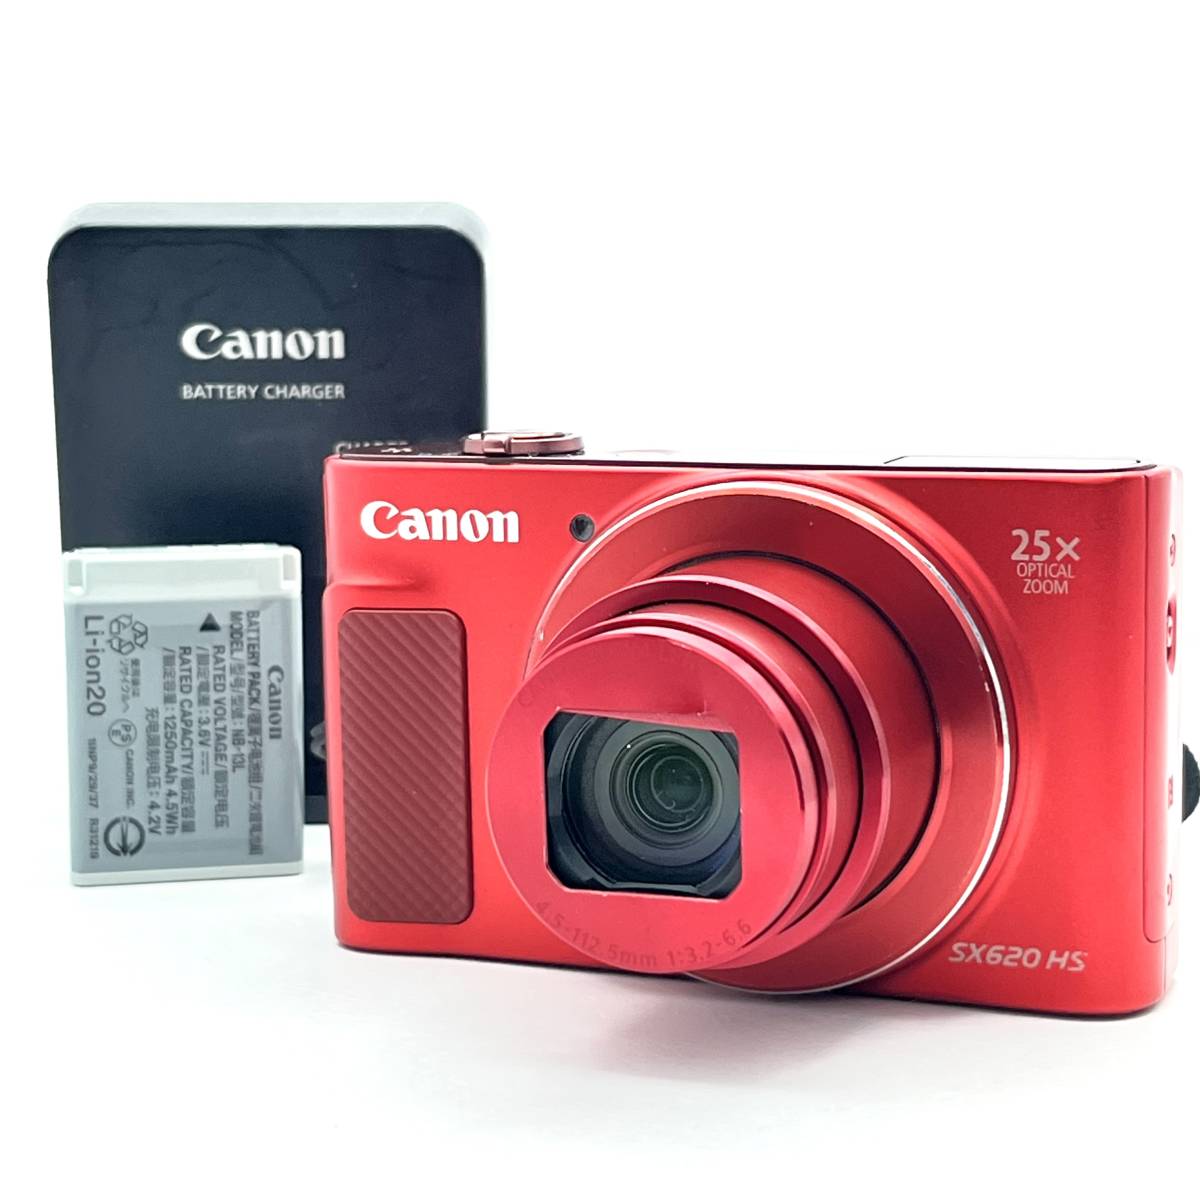 ★訳あり実用品★キャノン Canon PowerShot SX620 HS デジタルカメラ★ T880#1774